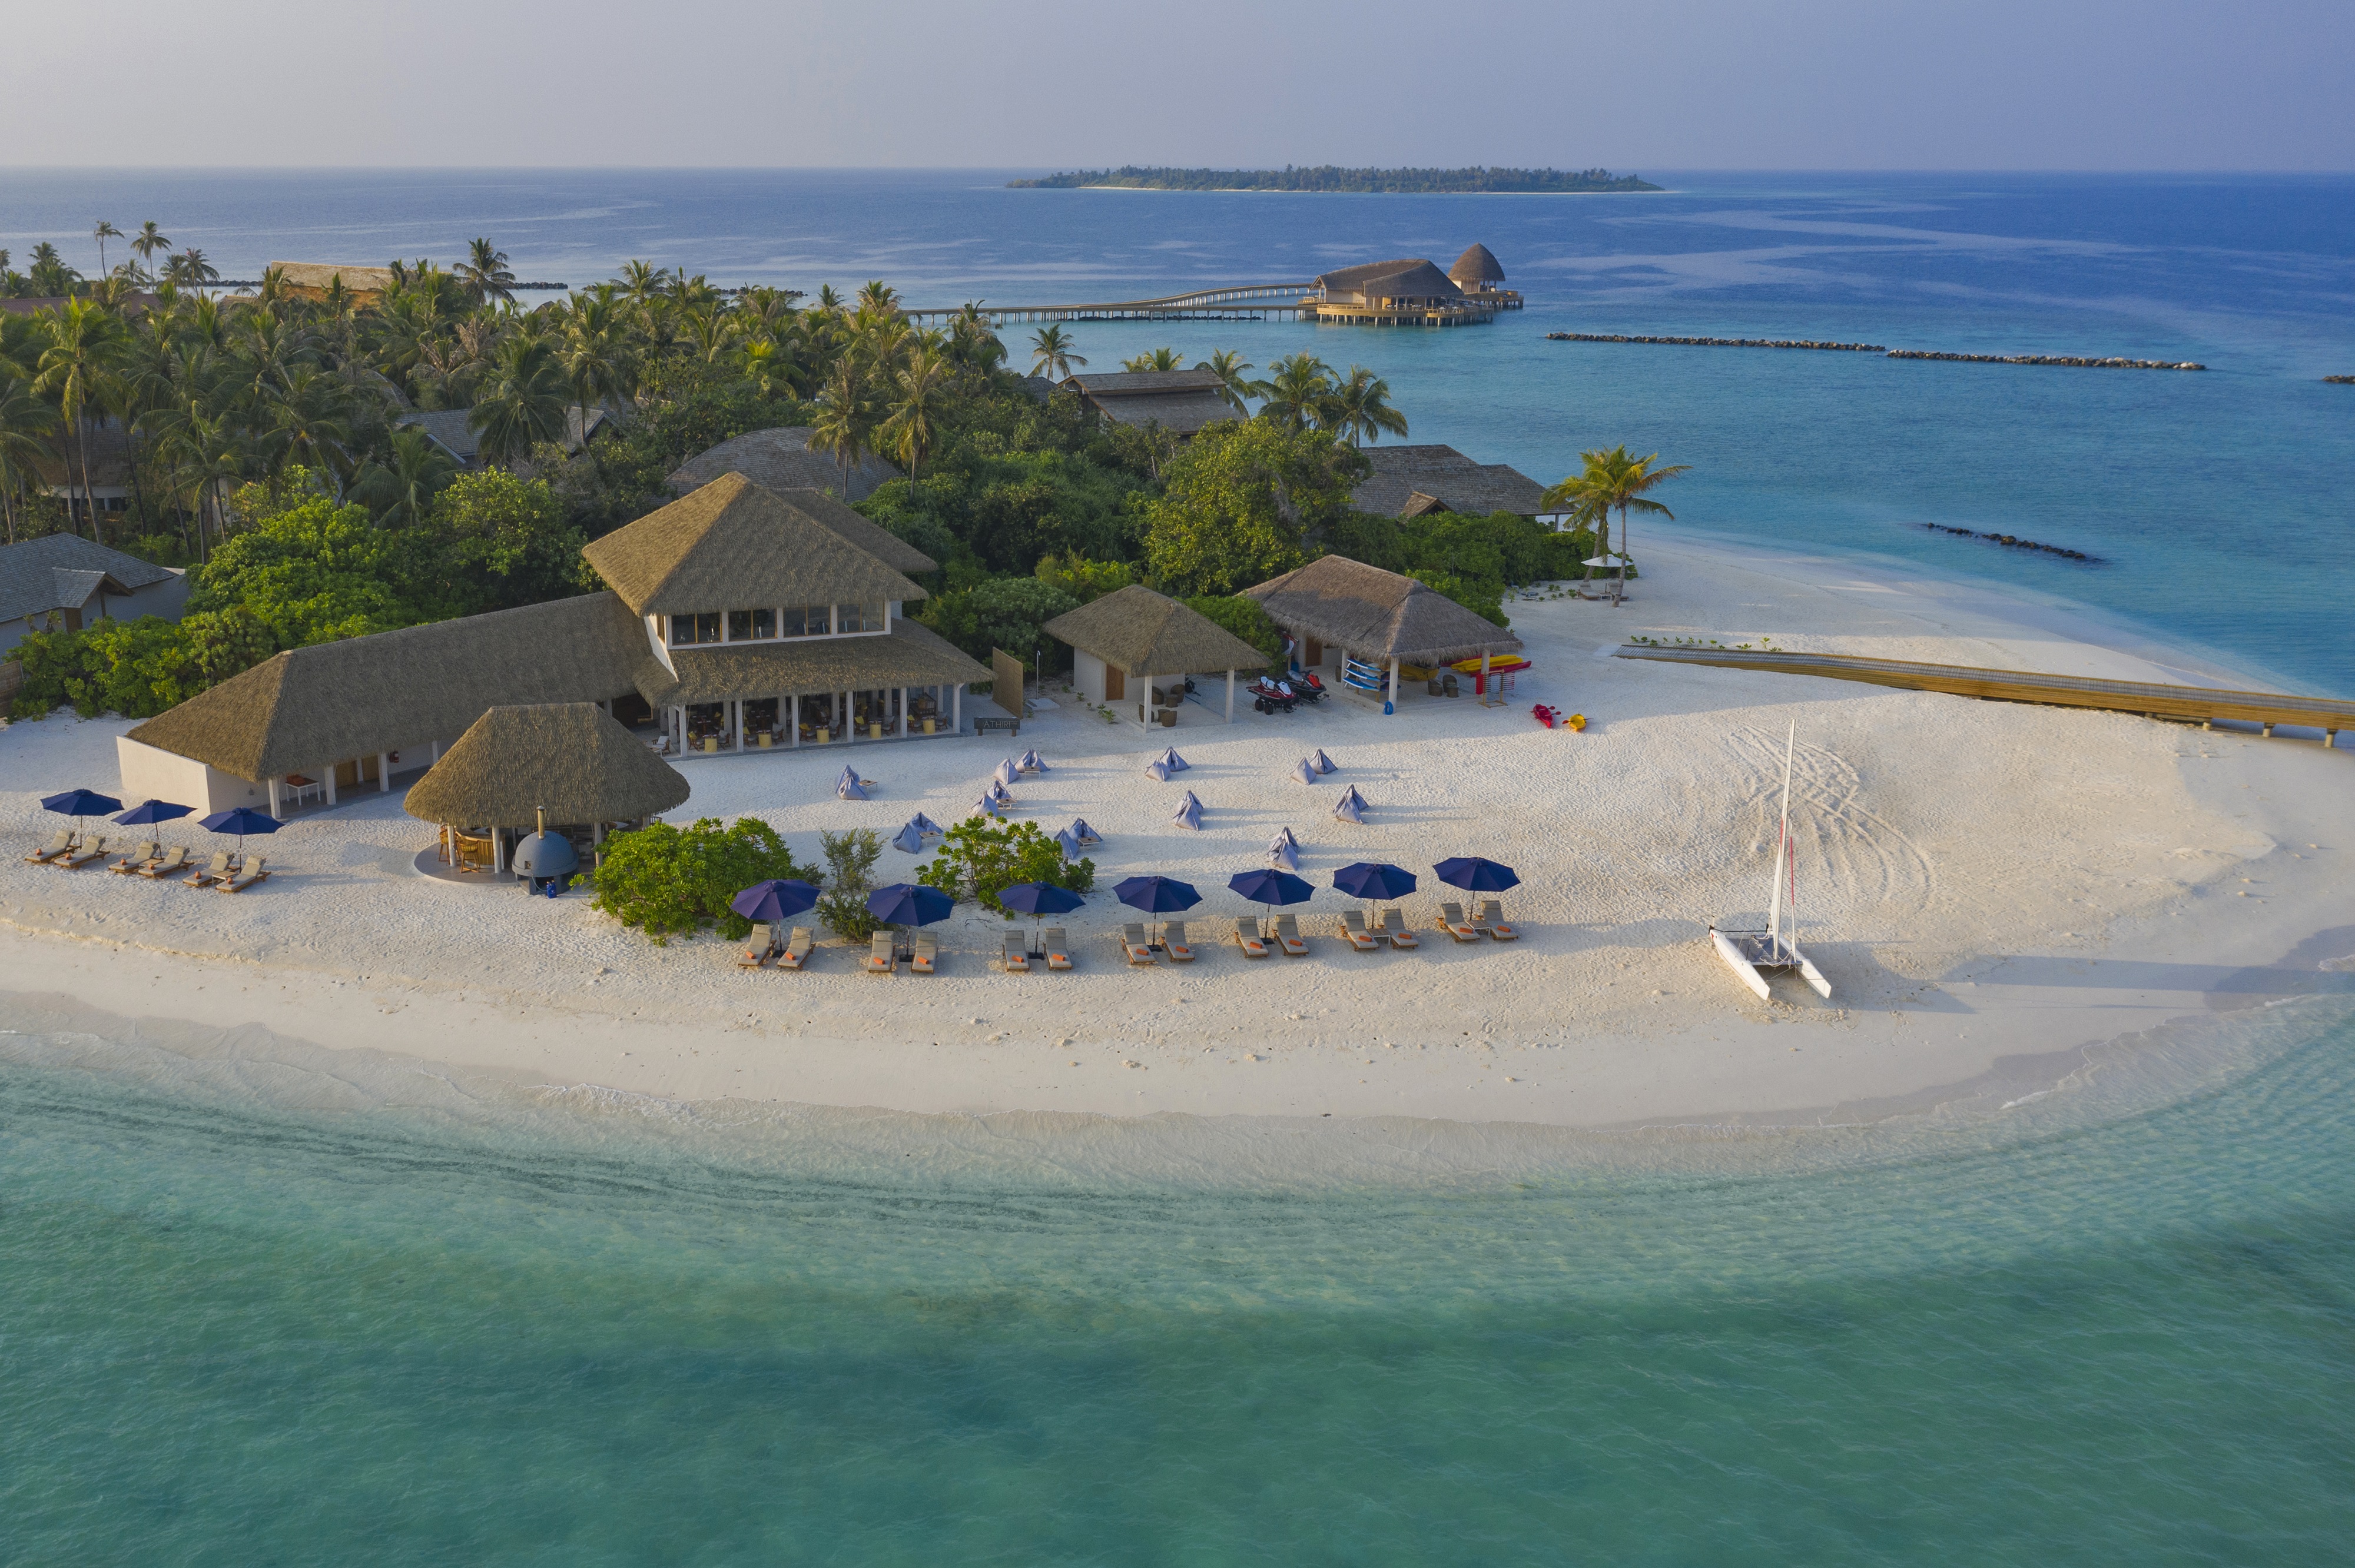 Photo de Faarufushi Resort island - endroit populaire parmi les connaisseurs de la détente